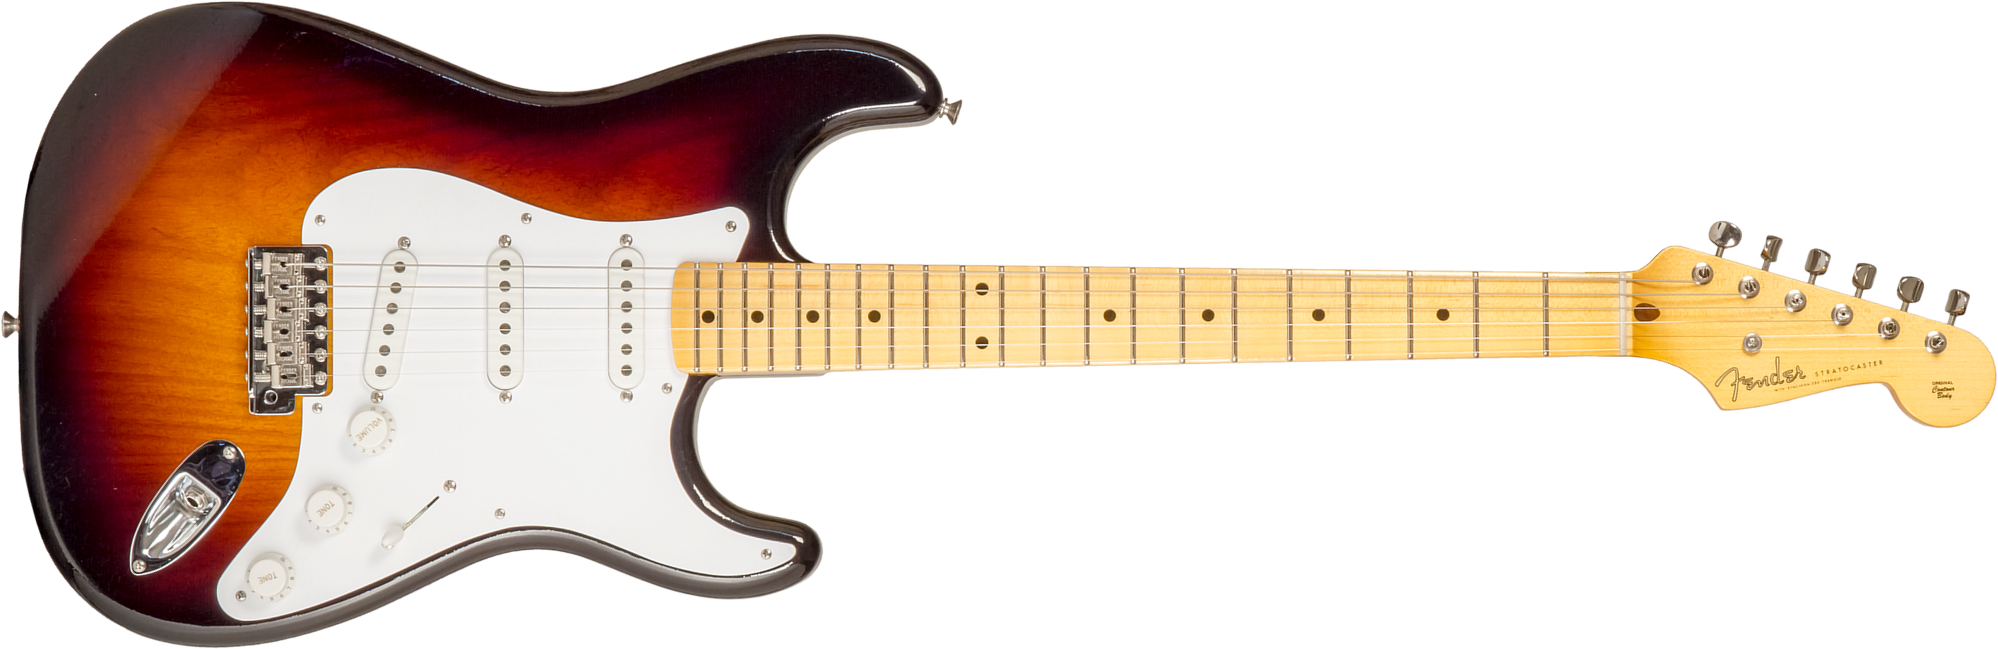 Fender Custom Shop Strat 1954 70th Anniv. 3s Trem Mn #xn4356 - Closet Classic Wide Fade 2-color Sunburst - Guitare Électrique Forme Str - Main picture